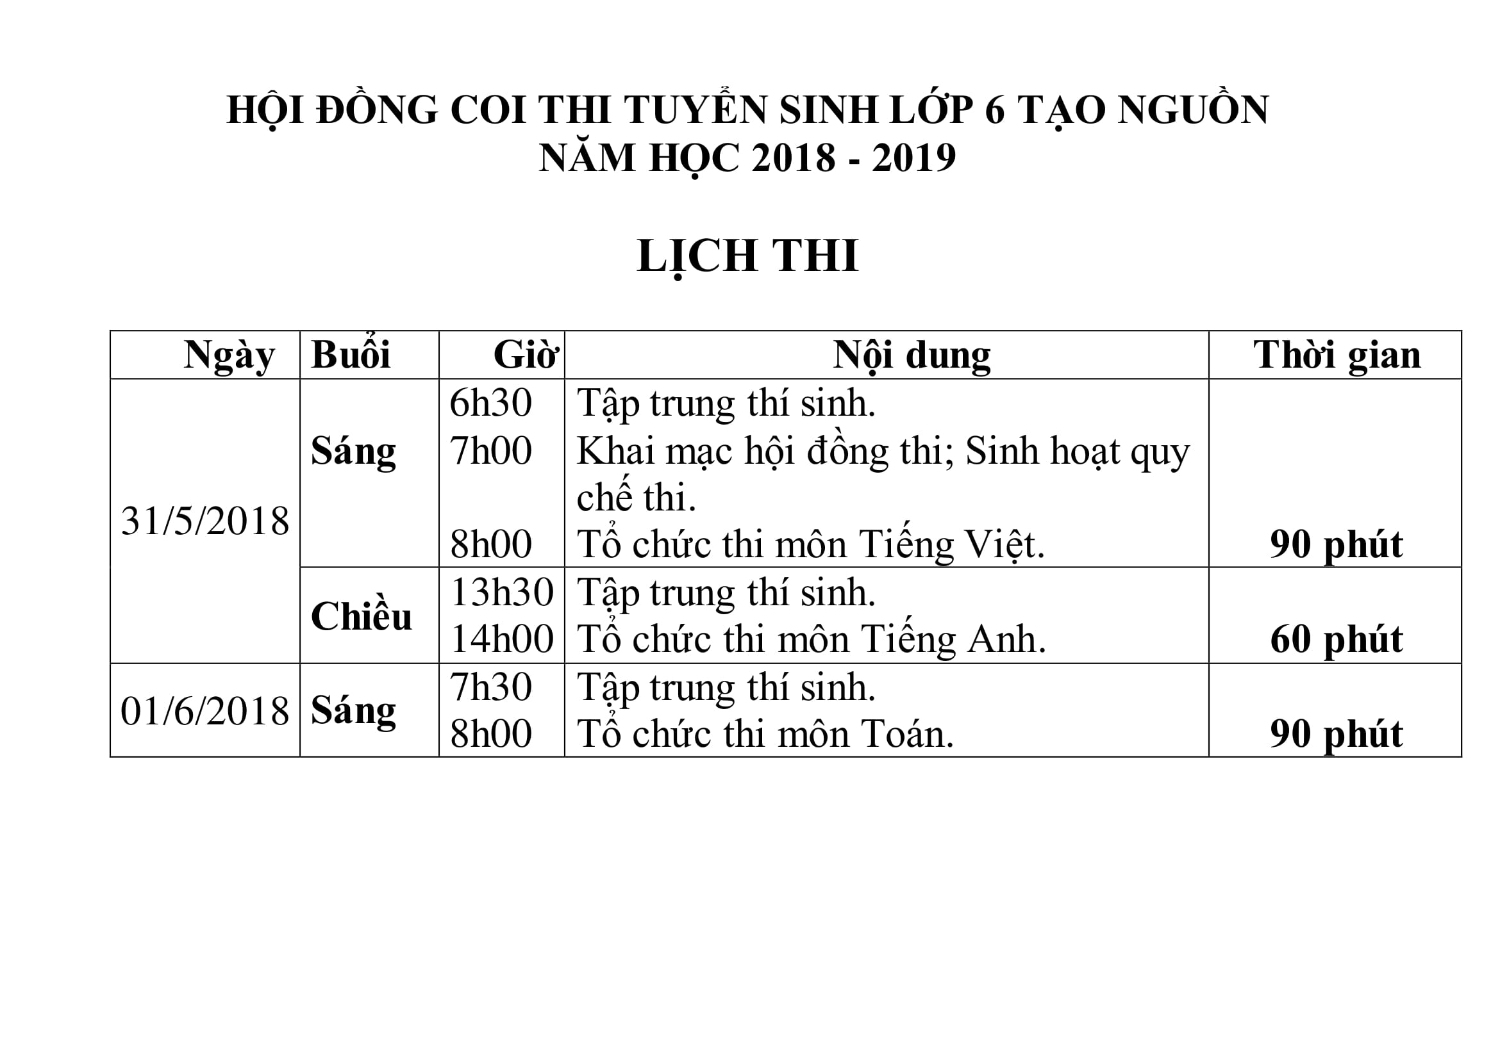 Lich thi lop 6 TN NH 2018 2019 1